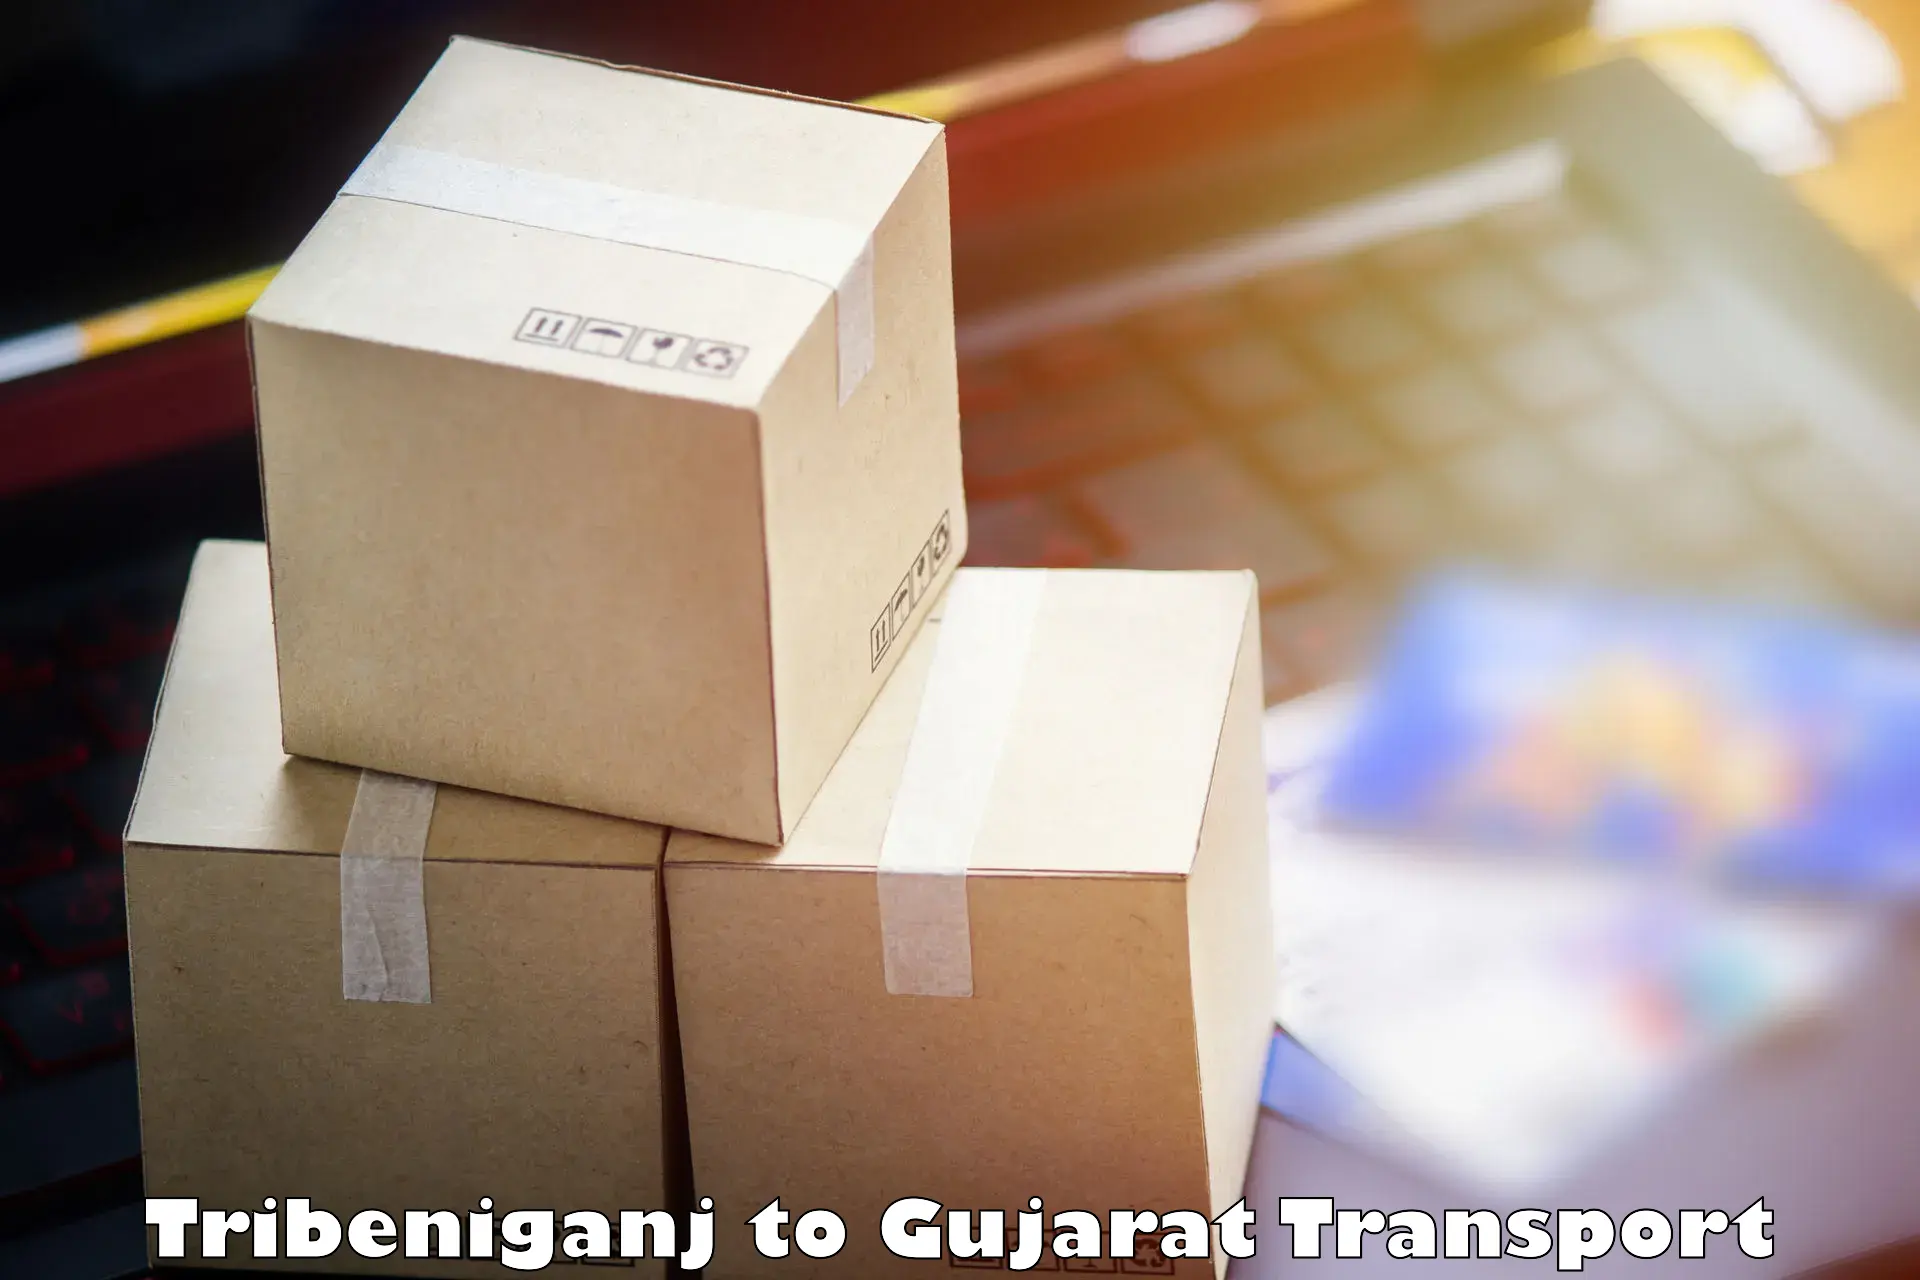 Shipping services Tribeniganj to Gujarat